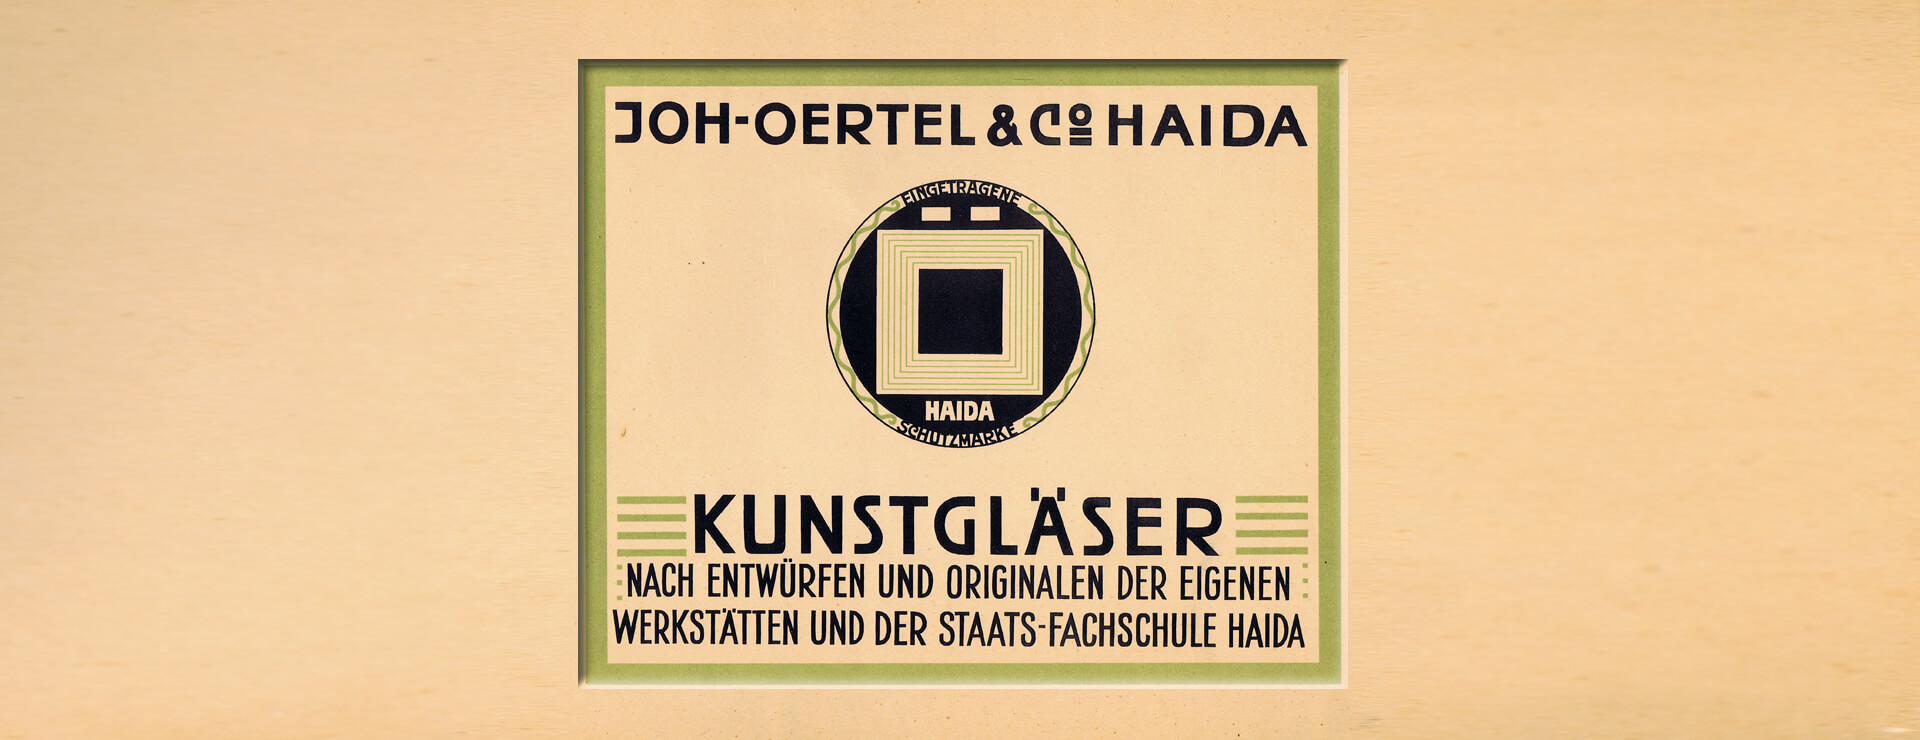 Oertel Firmenzeichen 1909